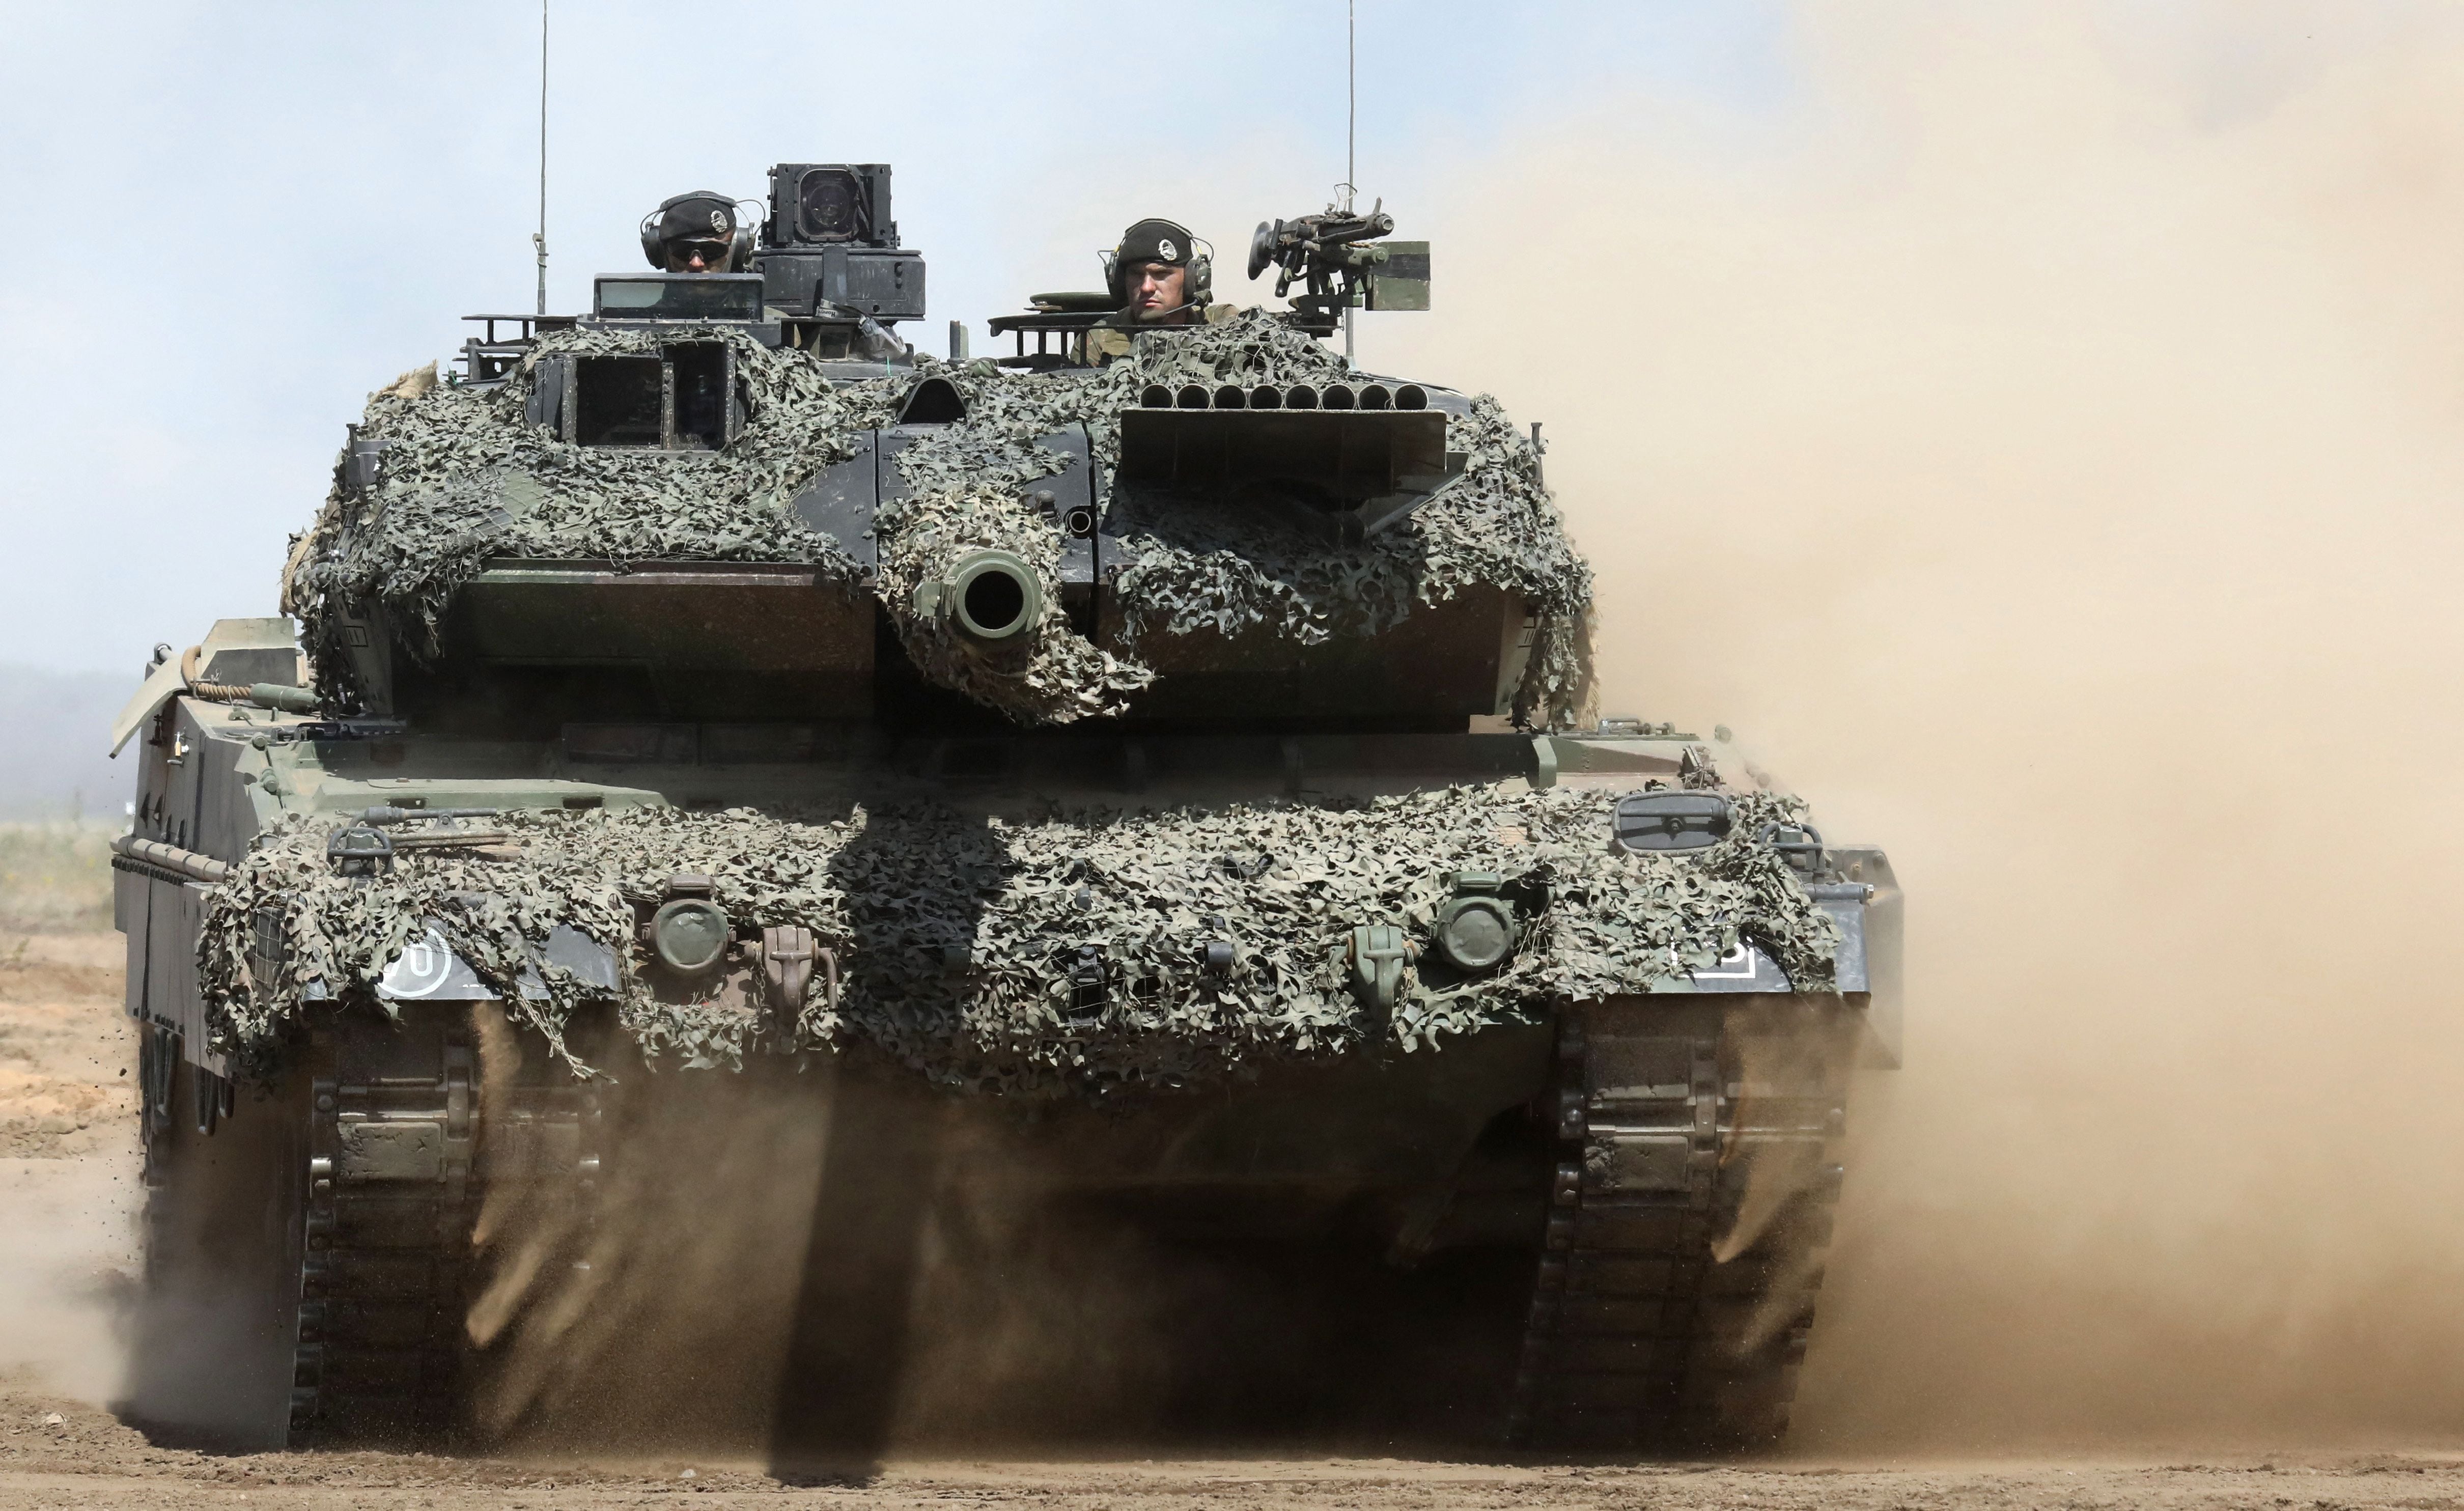 Leonardo eyes an Italian gun for Rome's new Leopard 2 tanks